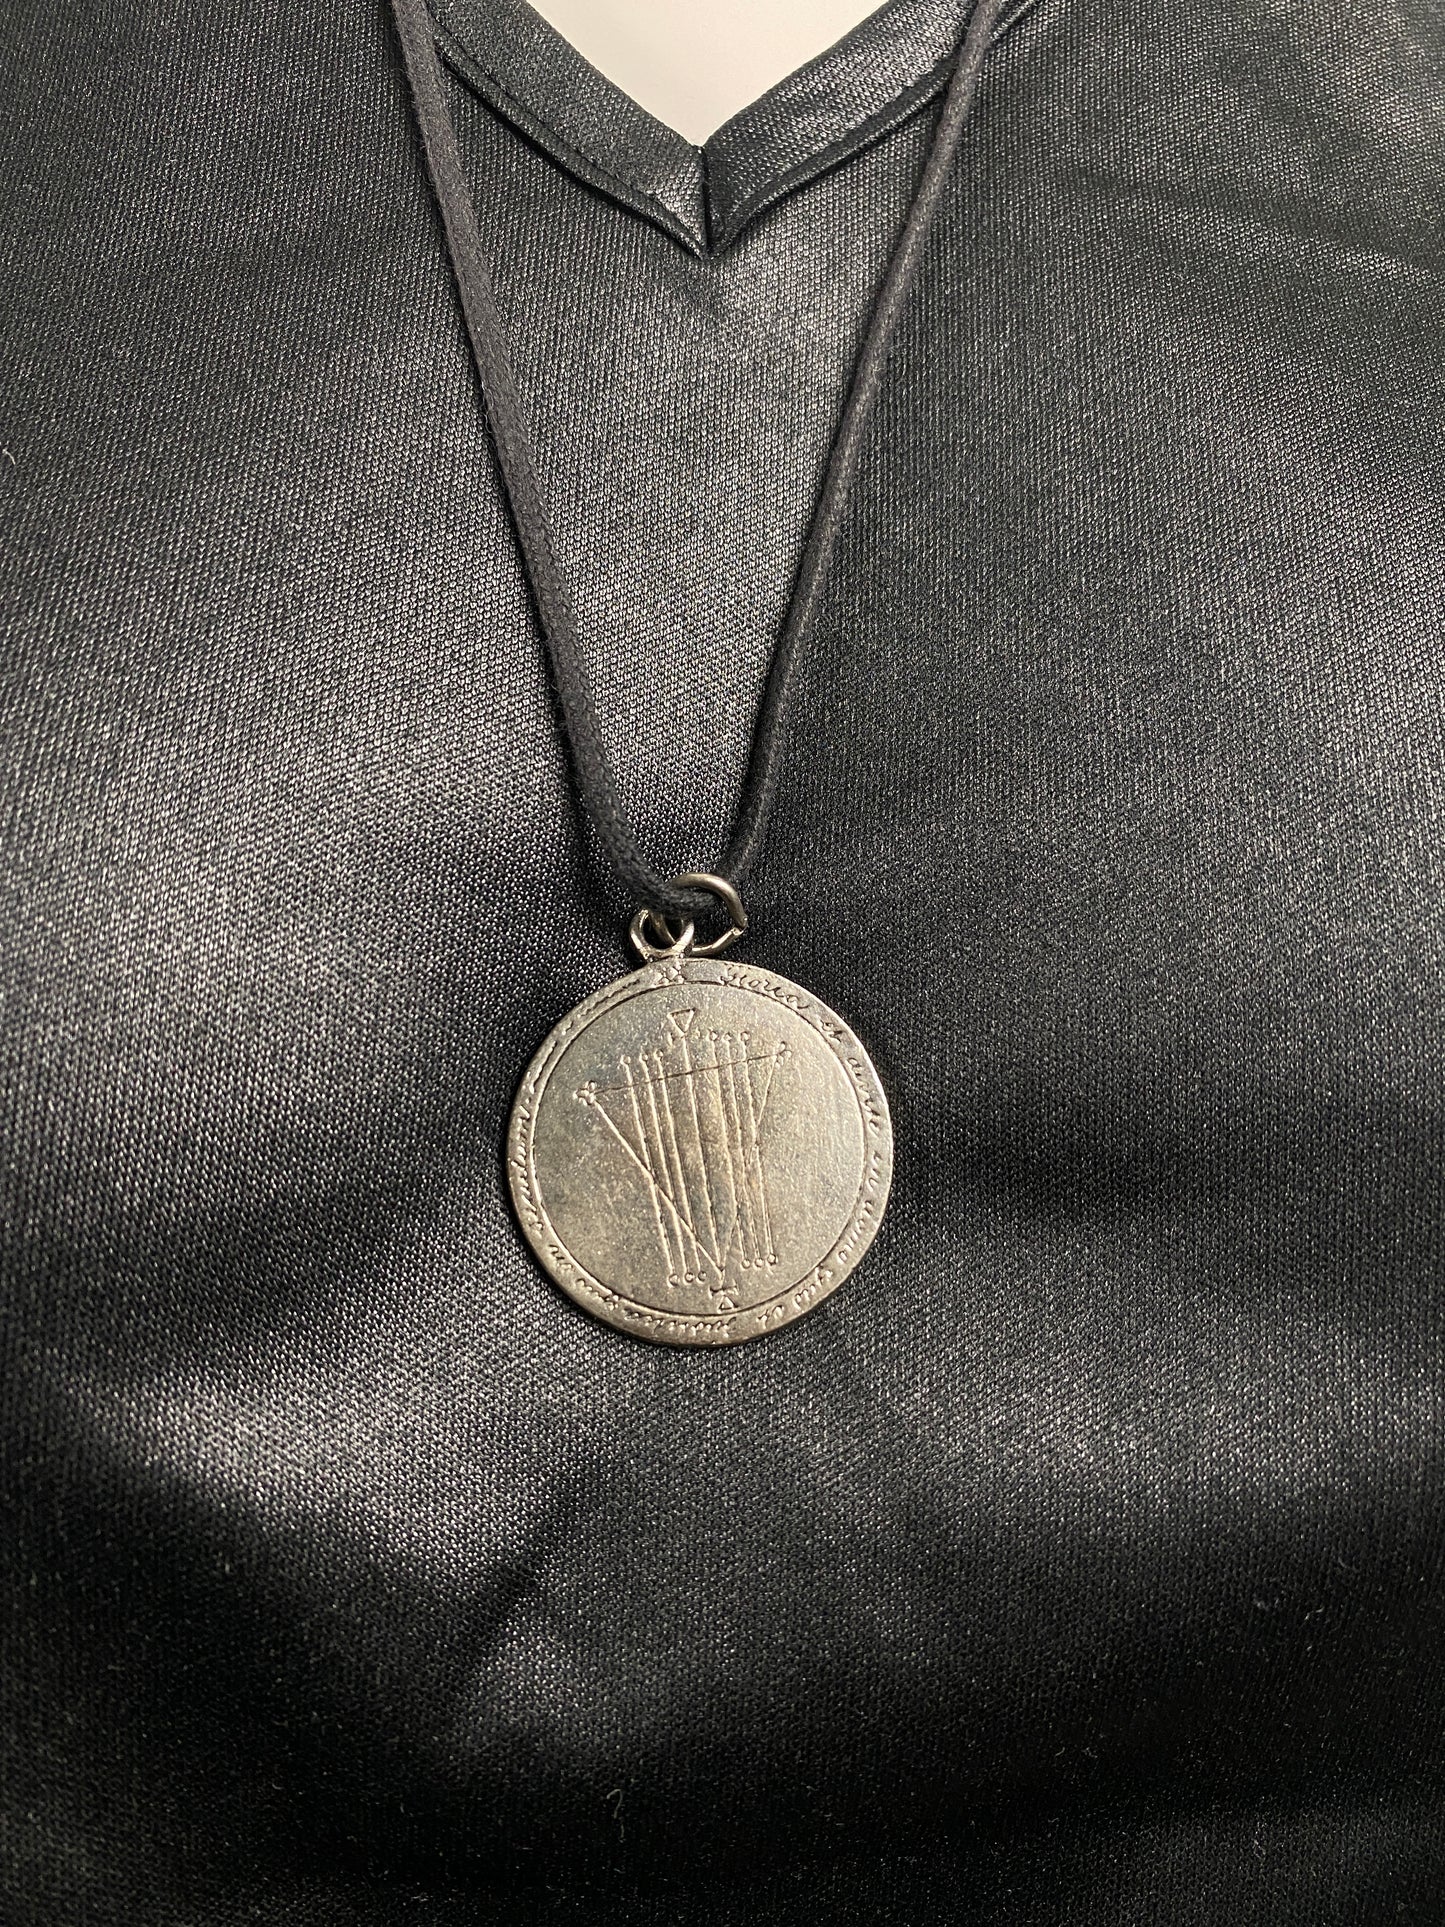 Alchemy Charm Necklace